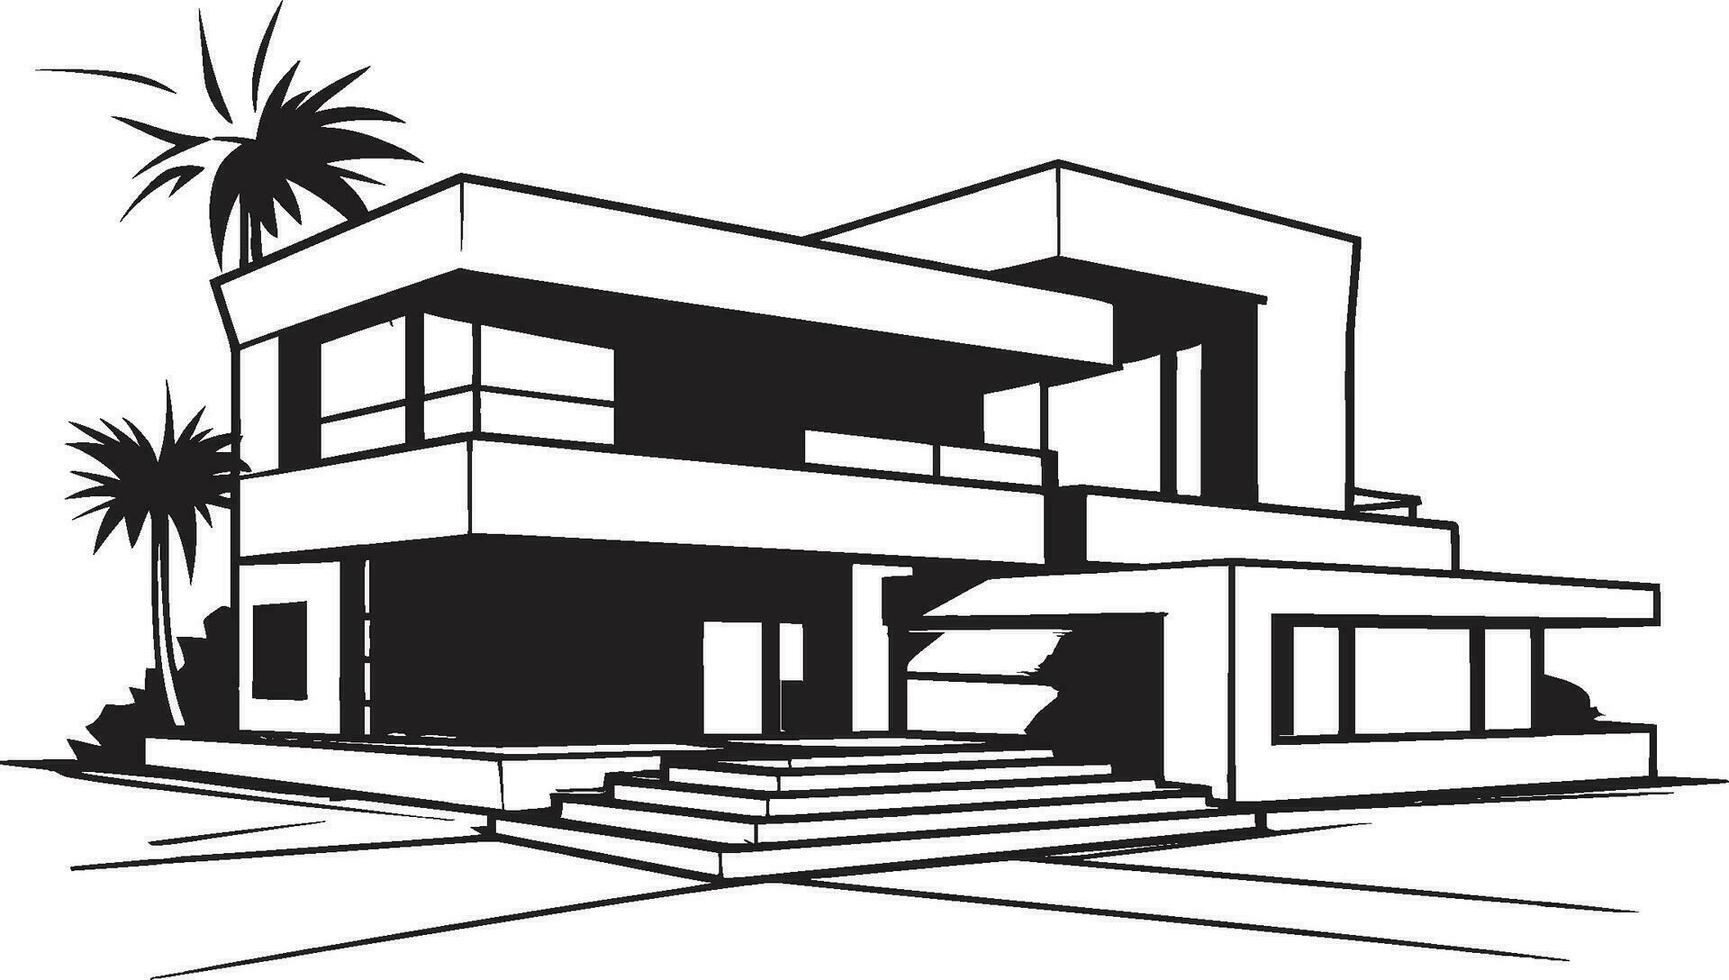 duplex habitation vision esquisser conception vecteur logo icône double résidence concept esquisser idée pour duplex maison conception